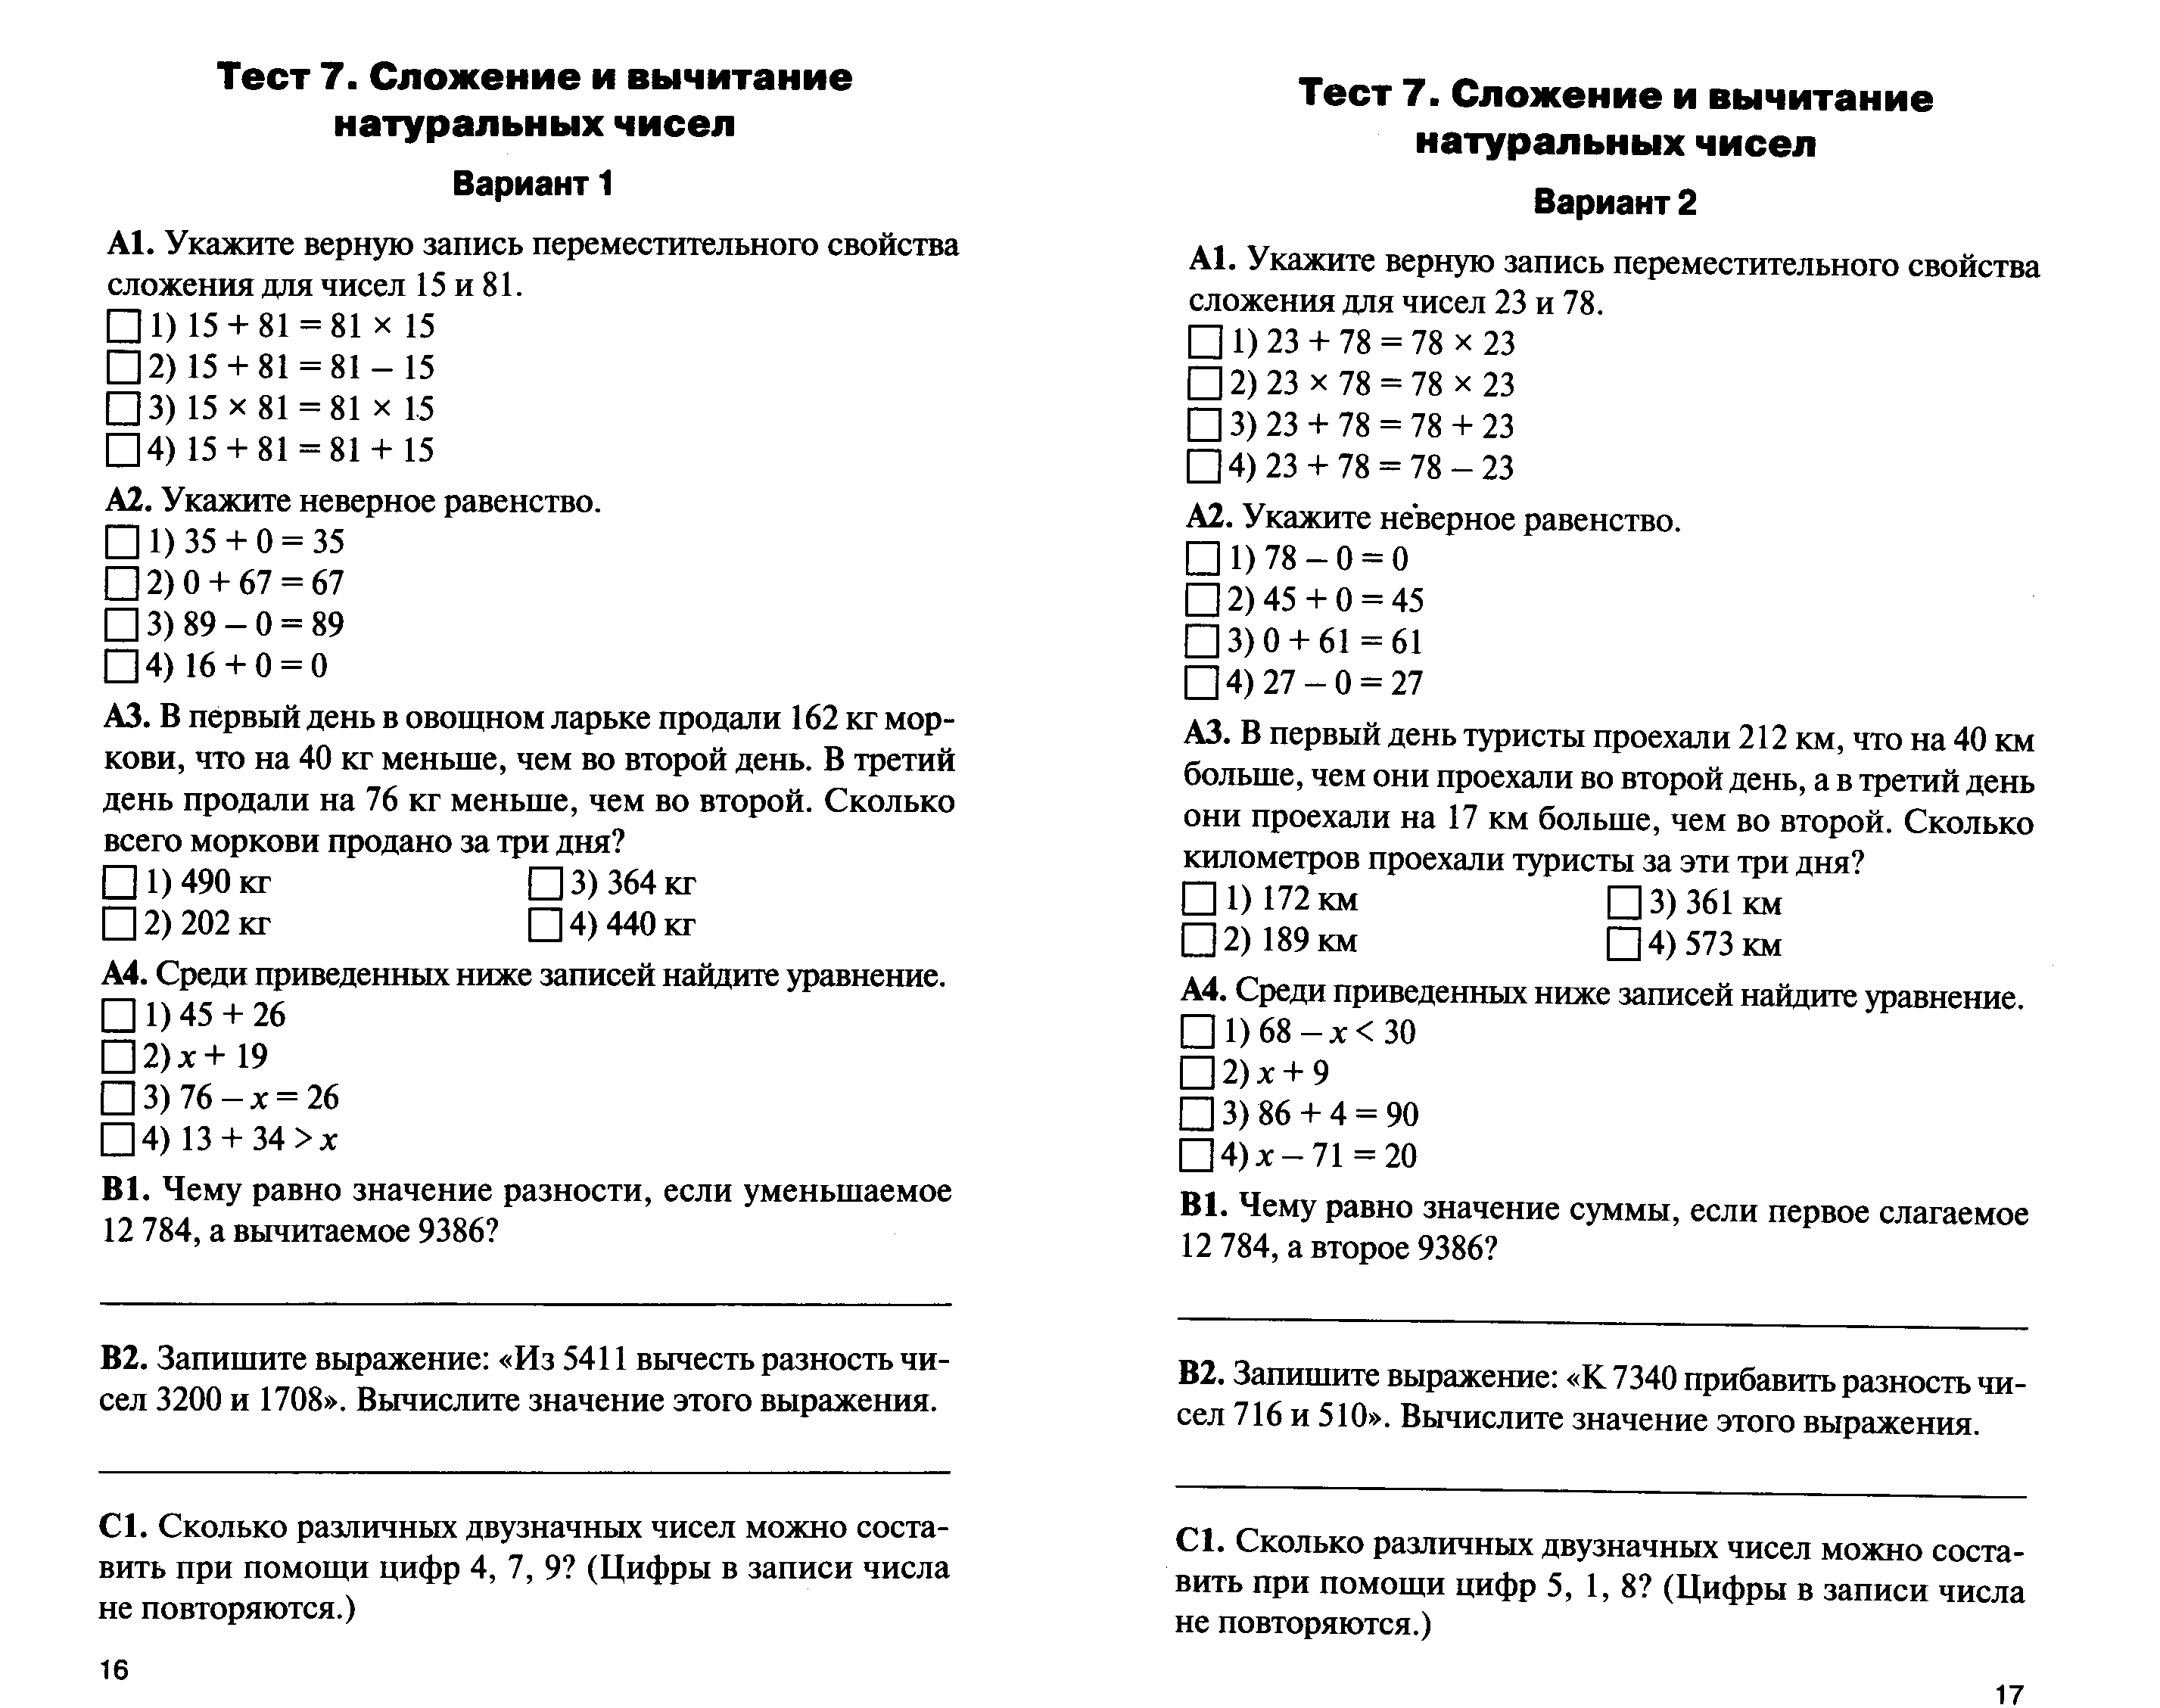 Мини тест 5. Контрольно-измерительные материалы по математике 5 класс. Контрольно-измерительные материалы математика 5 класс ФГОС ответы. Контрольно-измерительные материалы по математике 5 класс Виленкин.